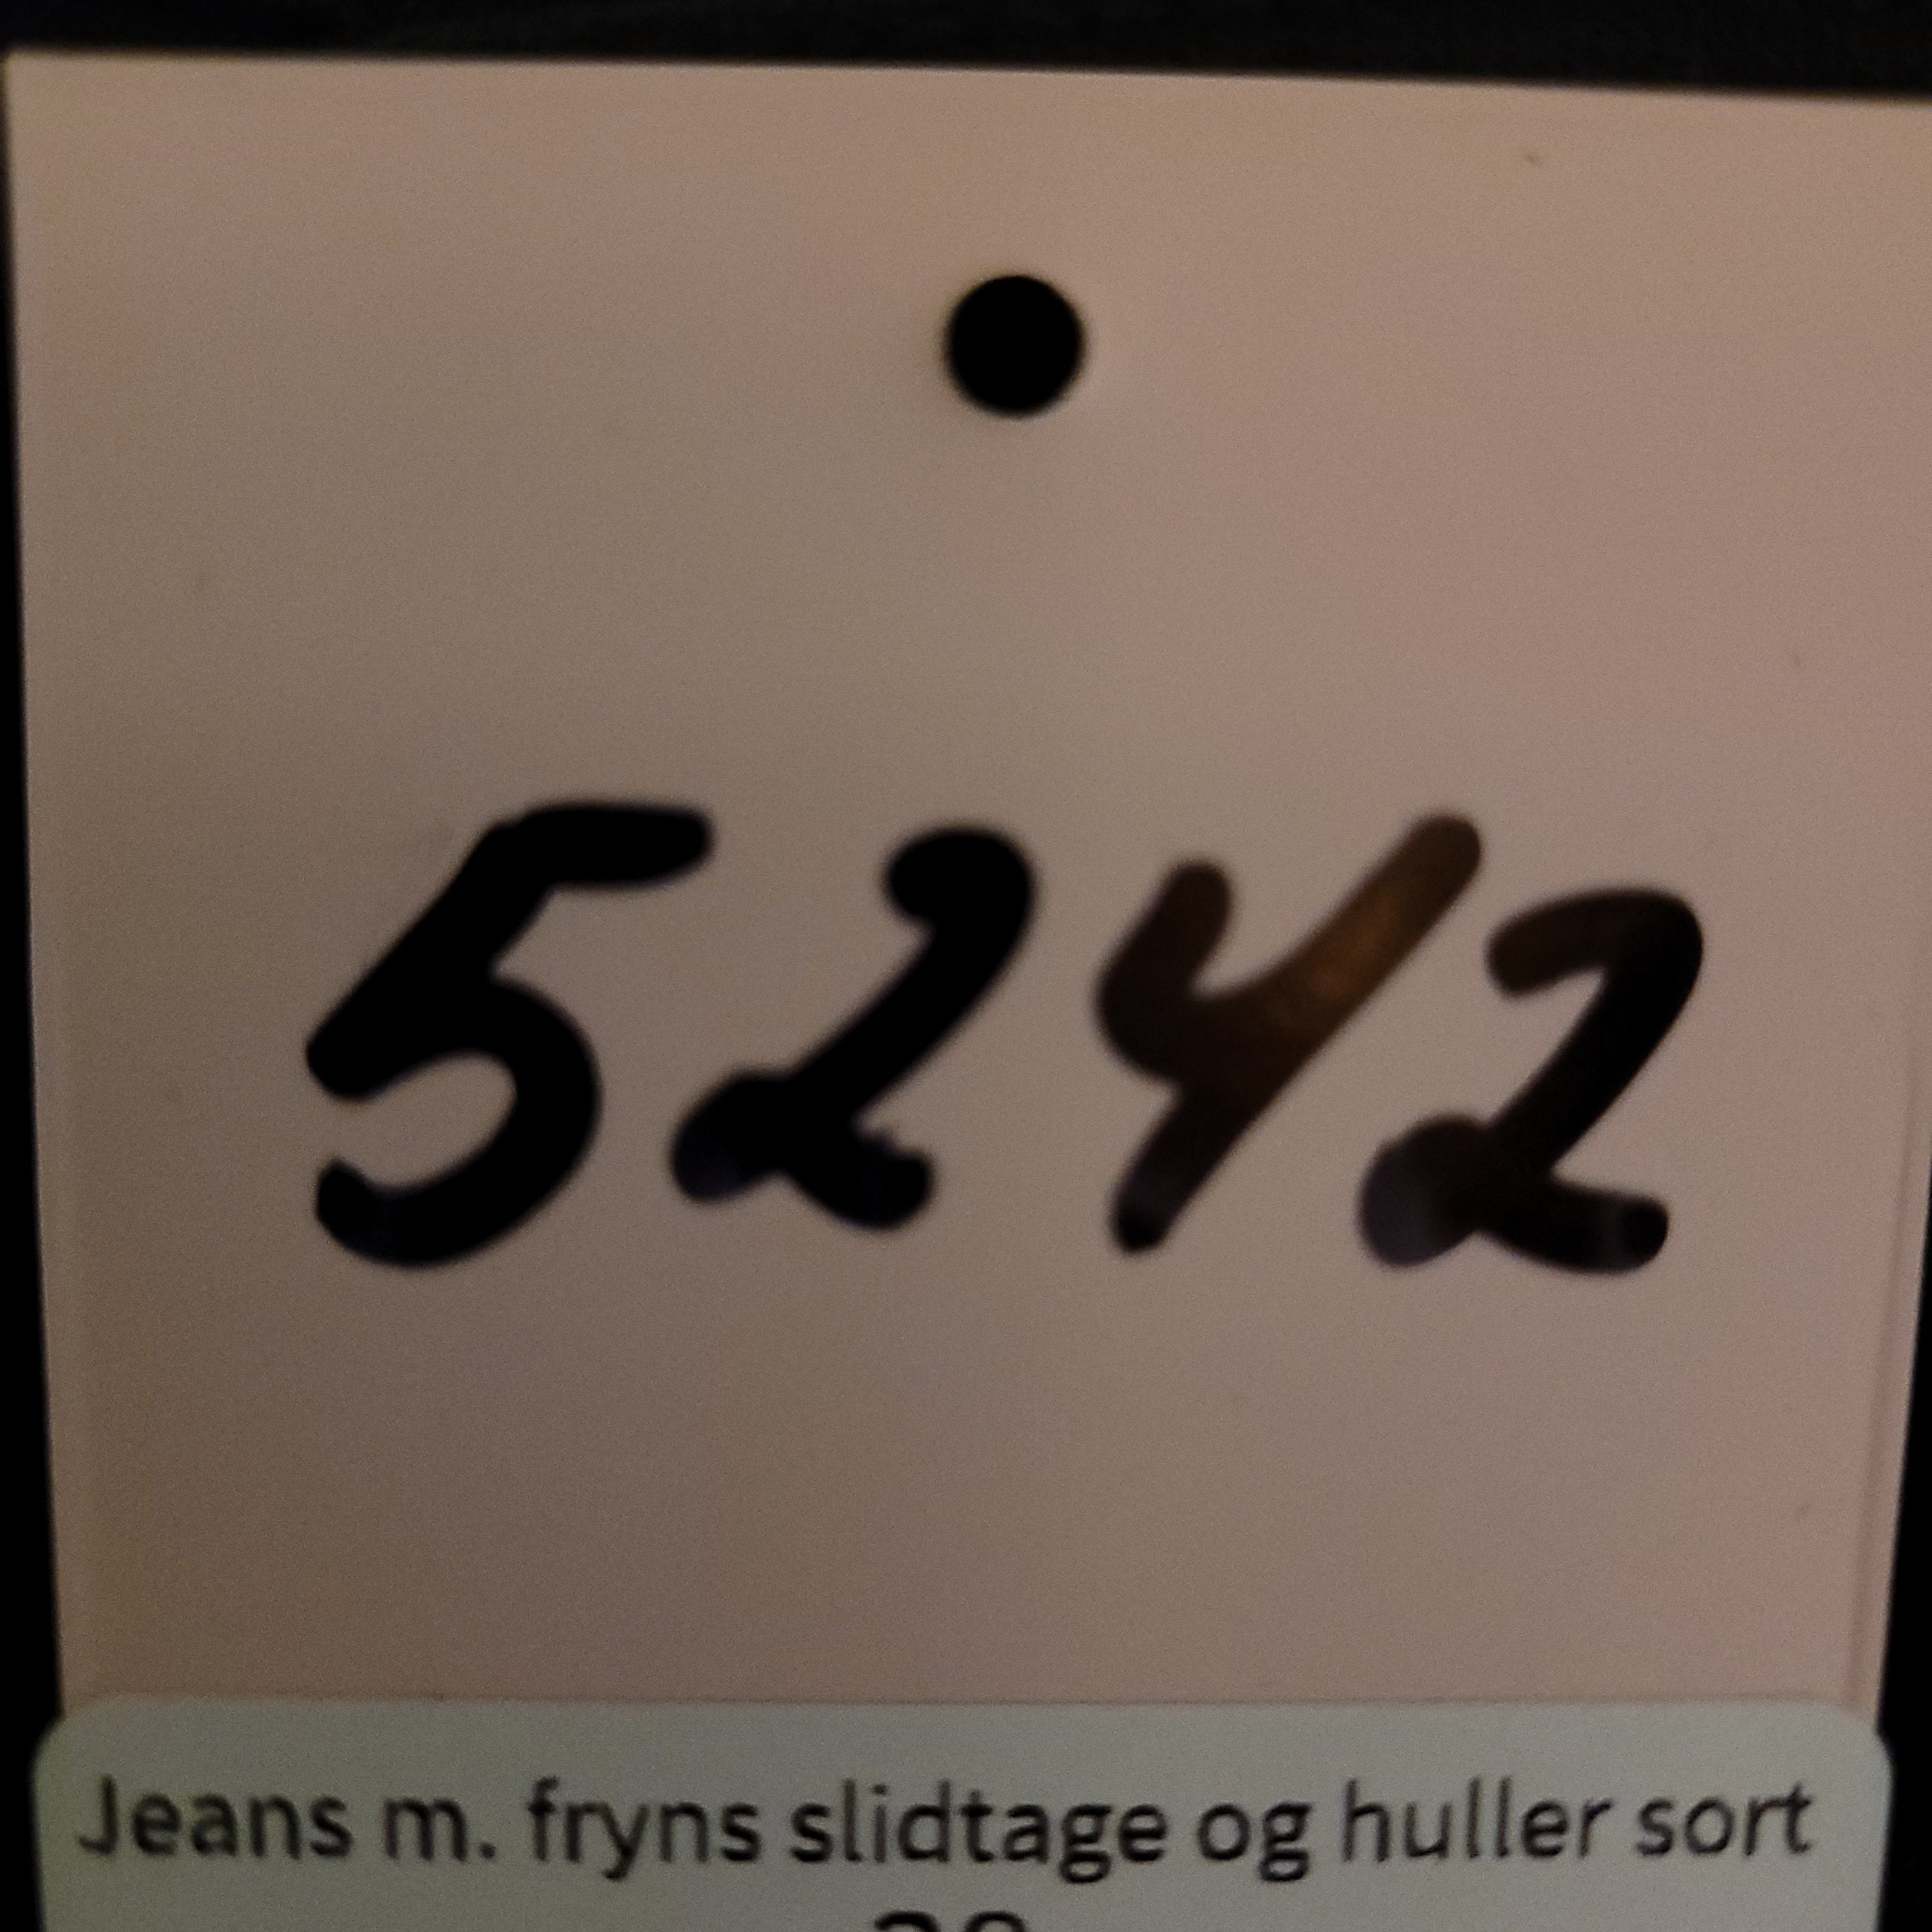 Jeans m. fryns slidtage og huller sort